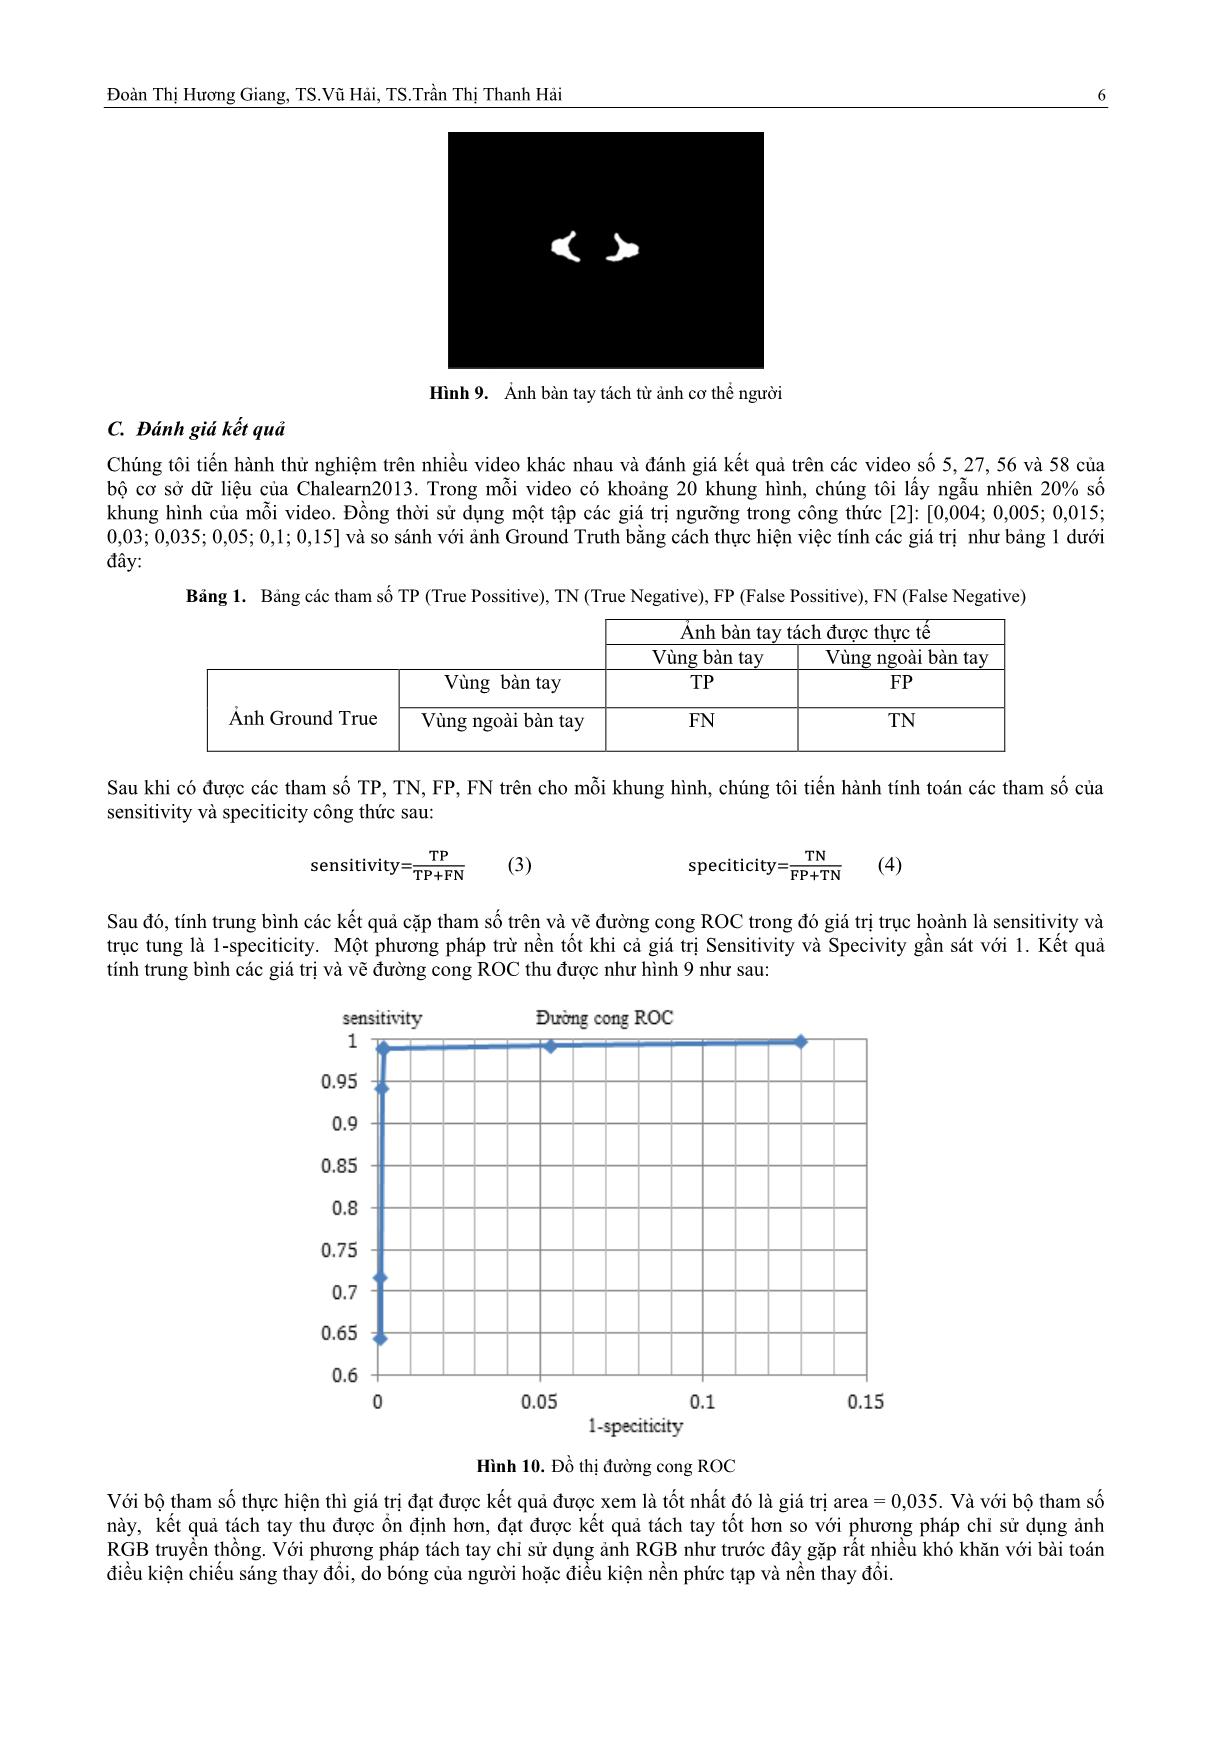 Khai thác dữ liệu ảnh độ sâu từ cảm biến Kinect: Sửa lỗi và ứng dụng trang 6